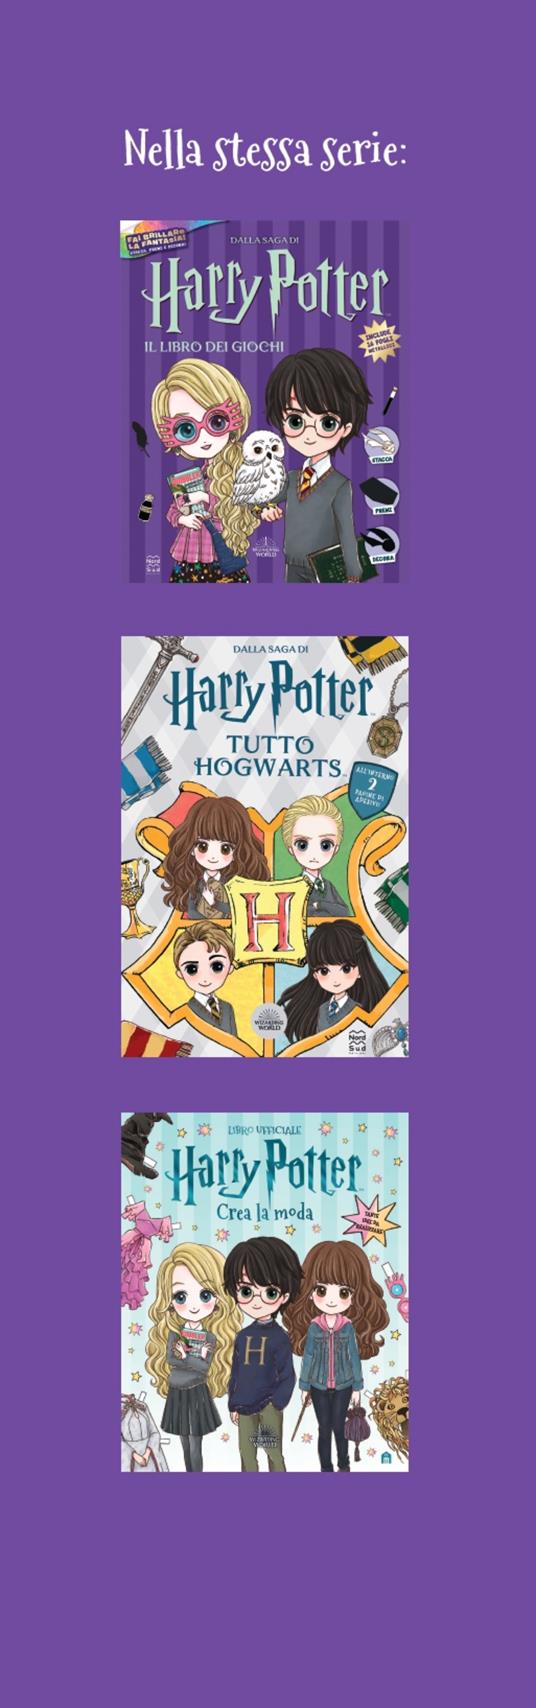 Harry Potter Magical Collection: dal 26 marzo arriva il nuovo cofanetto in  stile libro!